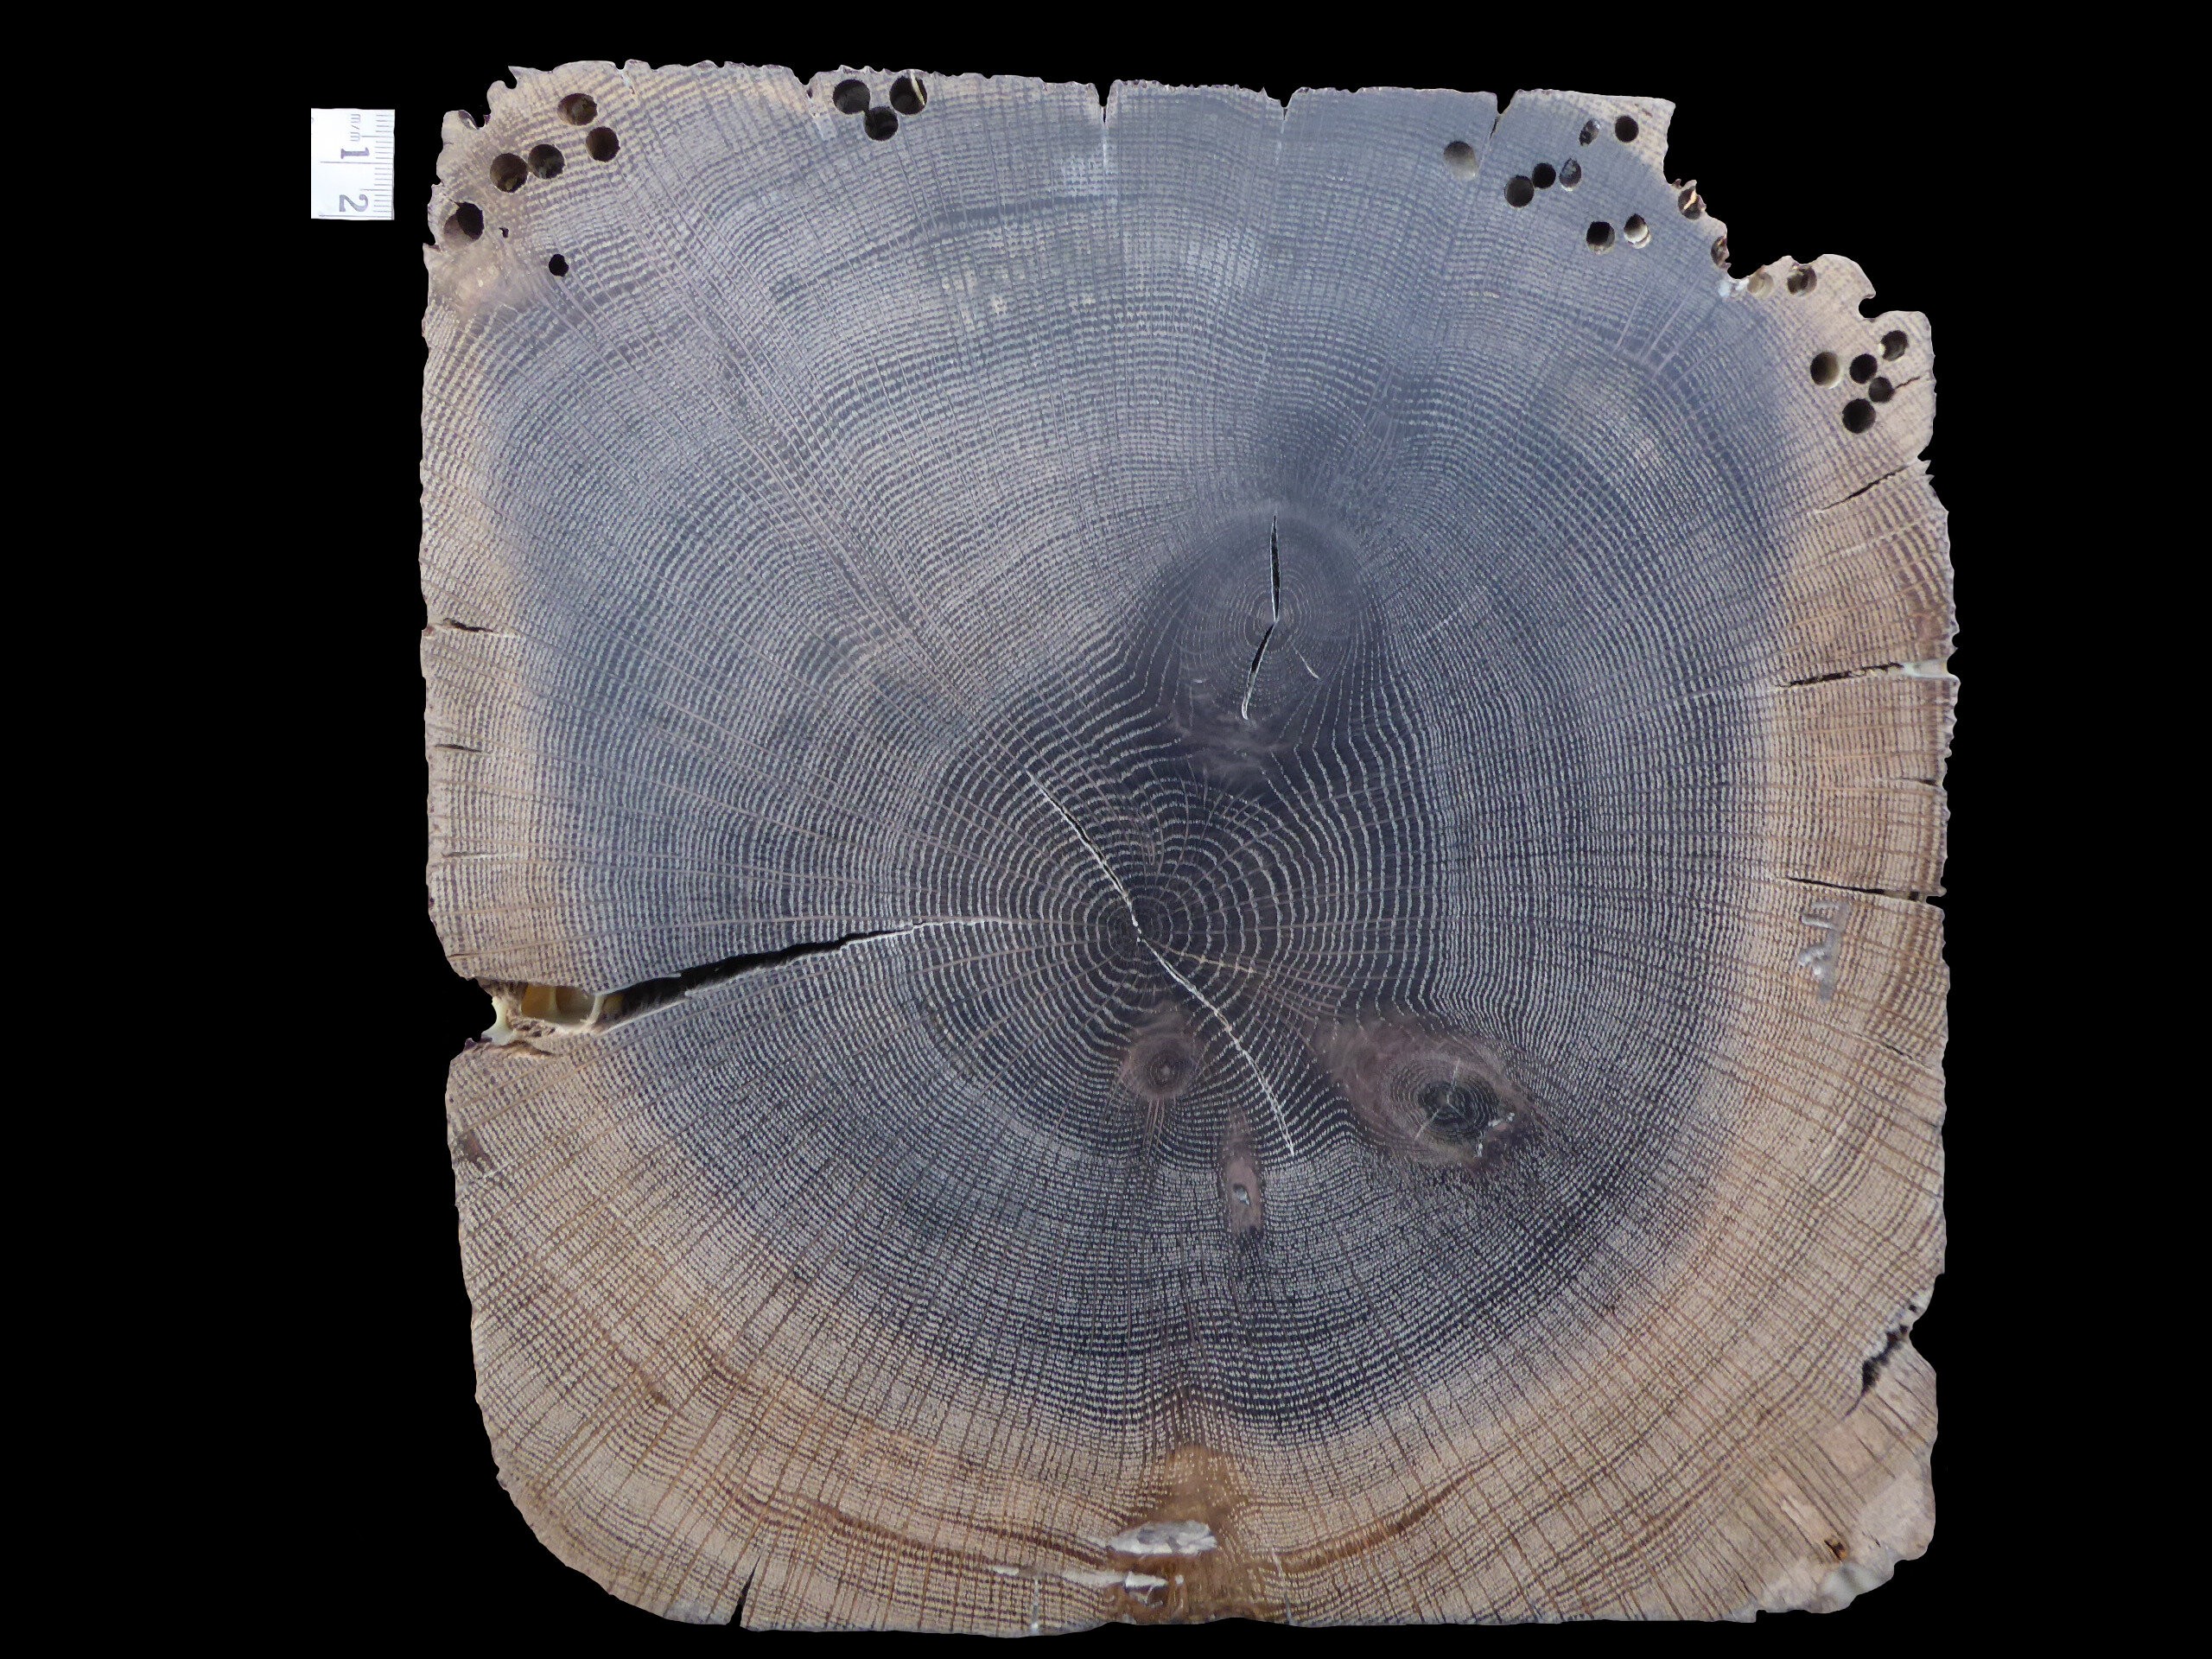 Corte transversal de carvalho-branco com 156 anéis; seu último anel foi datado de 1845. Os buracos na parte superior foram feitos por vermes marinhos comedores de madeira (Foto: Ignacio Mundo)